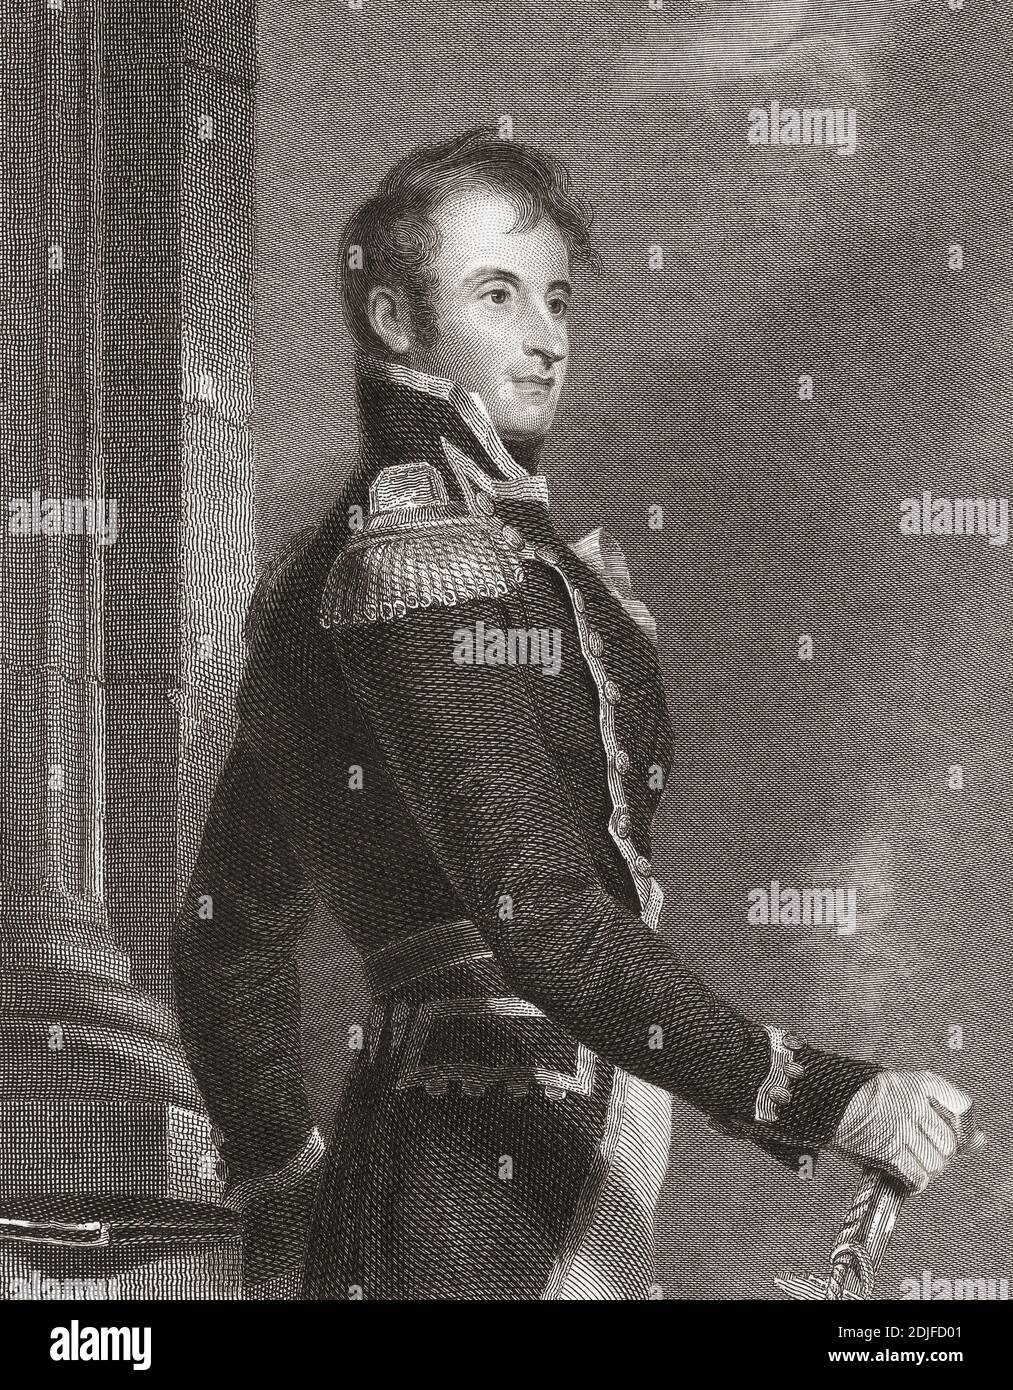 Stephen Decatur Jr, 1779 - 1820. Officier de marine américain. Il était célèbre pour son leadership et ses exploits dans quatre guerres. Après une gravure d'Asher Brown Durand d'une oeuvre de Thomas Sully. Banque D'Images